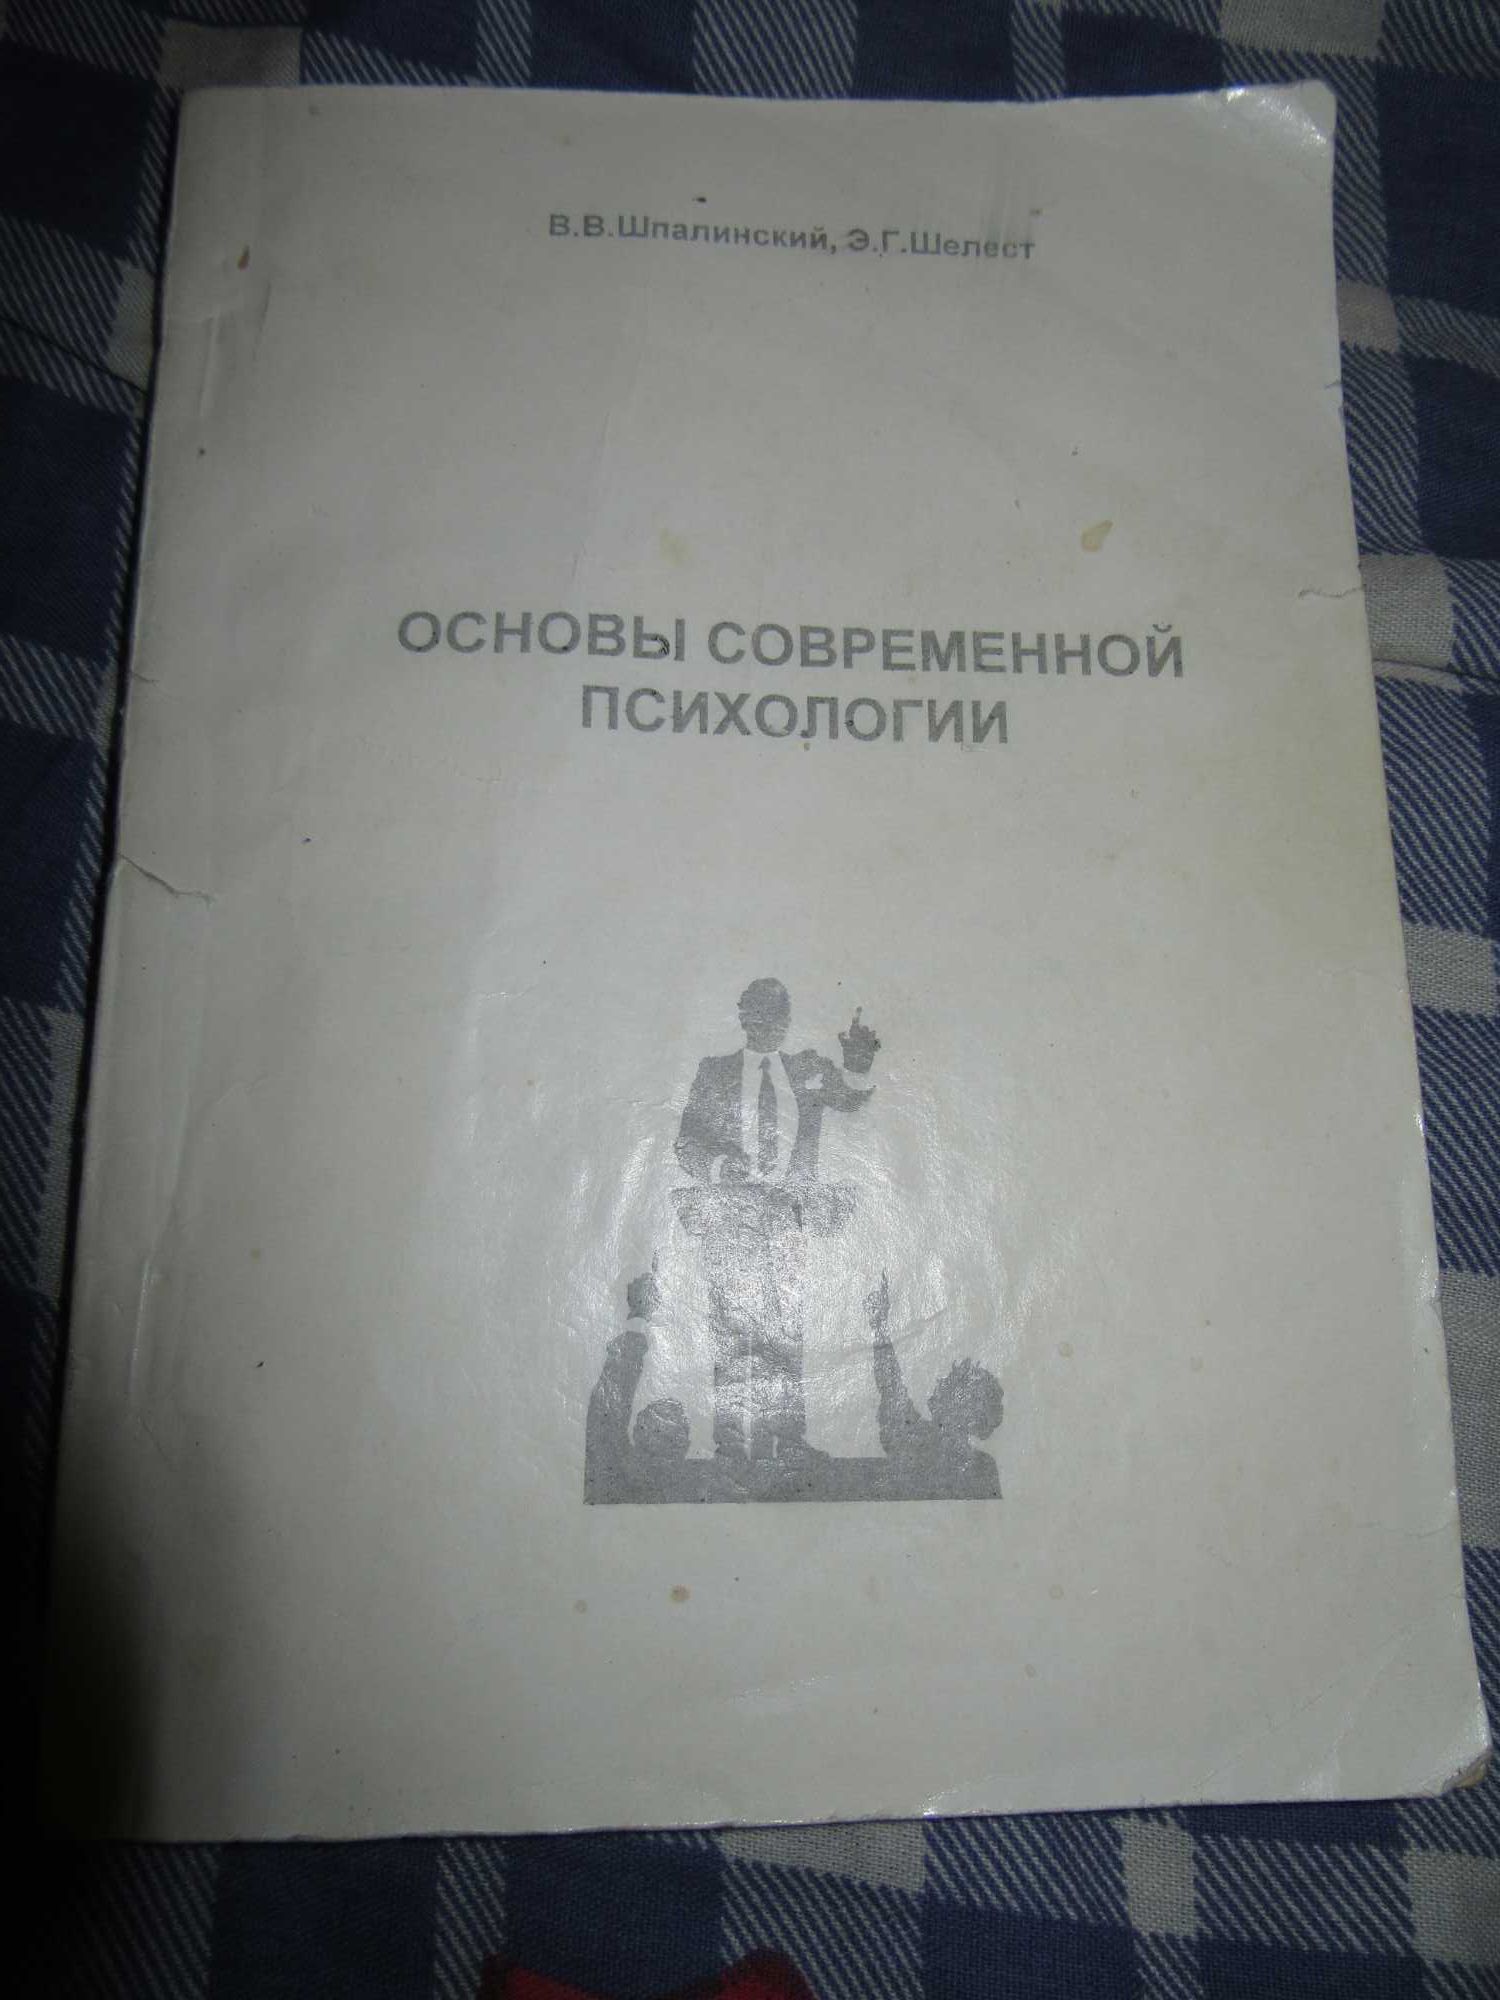 Шпалинский В.В.,Шелест Э.Г.Основы современной психологии.Харьков,1997